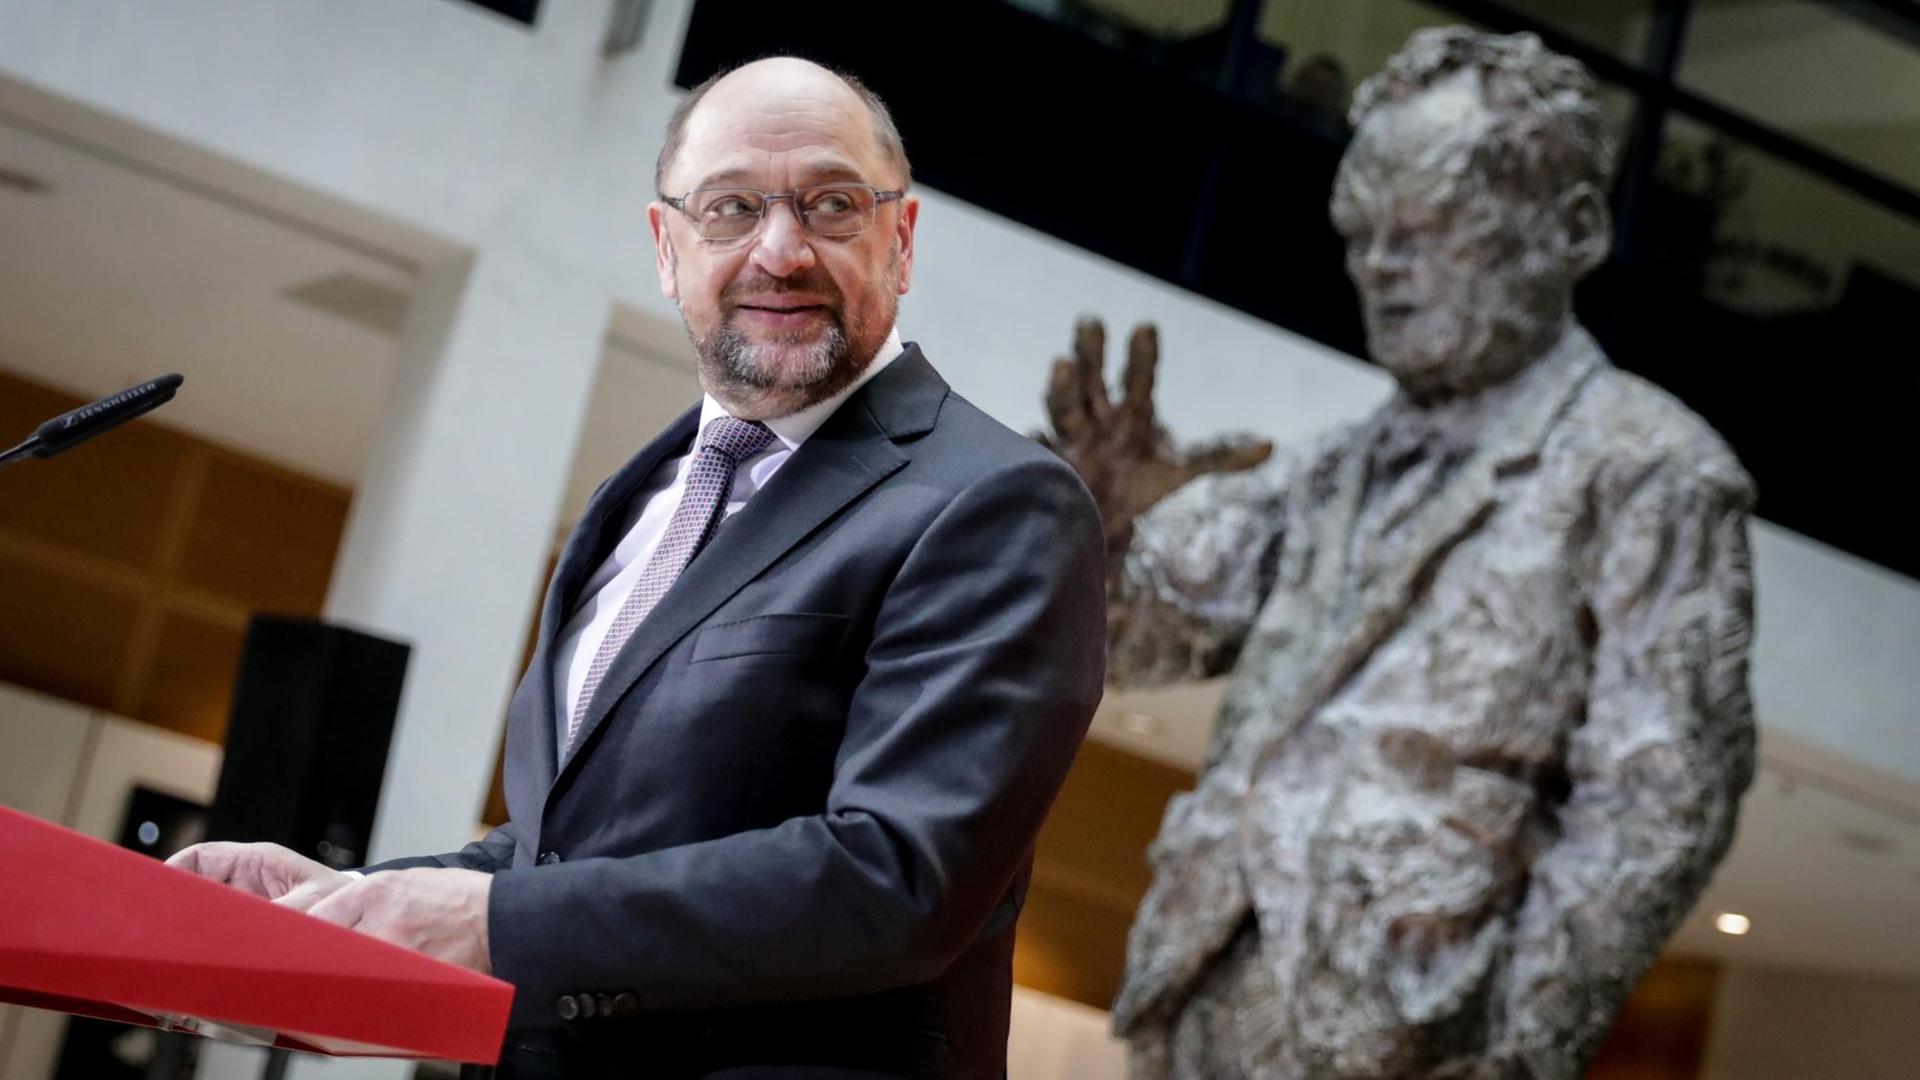 Der SPD-Vorsitzende Martin Schulz spricht am 01.12.2017 in Berlin im Willy-Brandt-Haus zu den Journalisten.